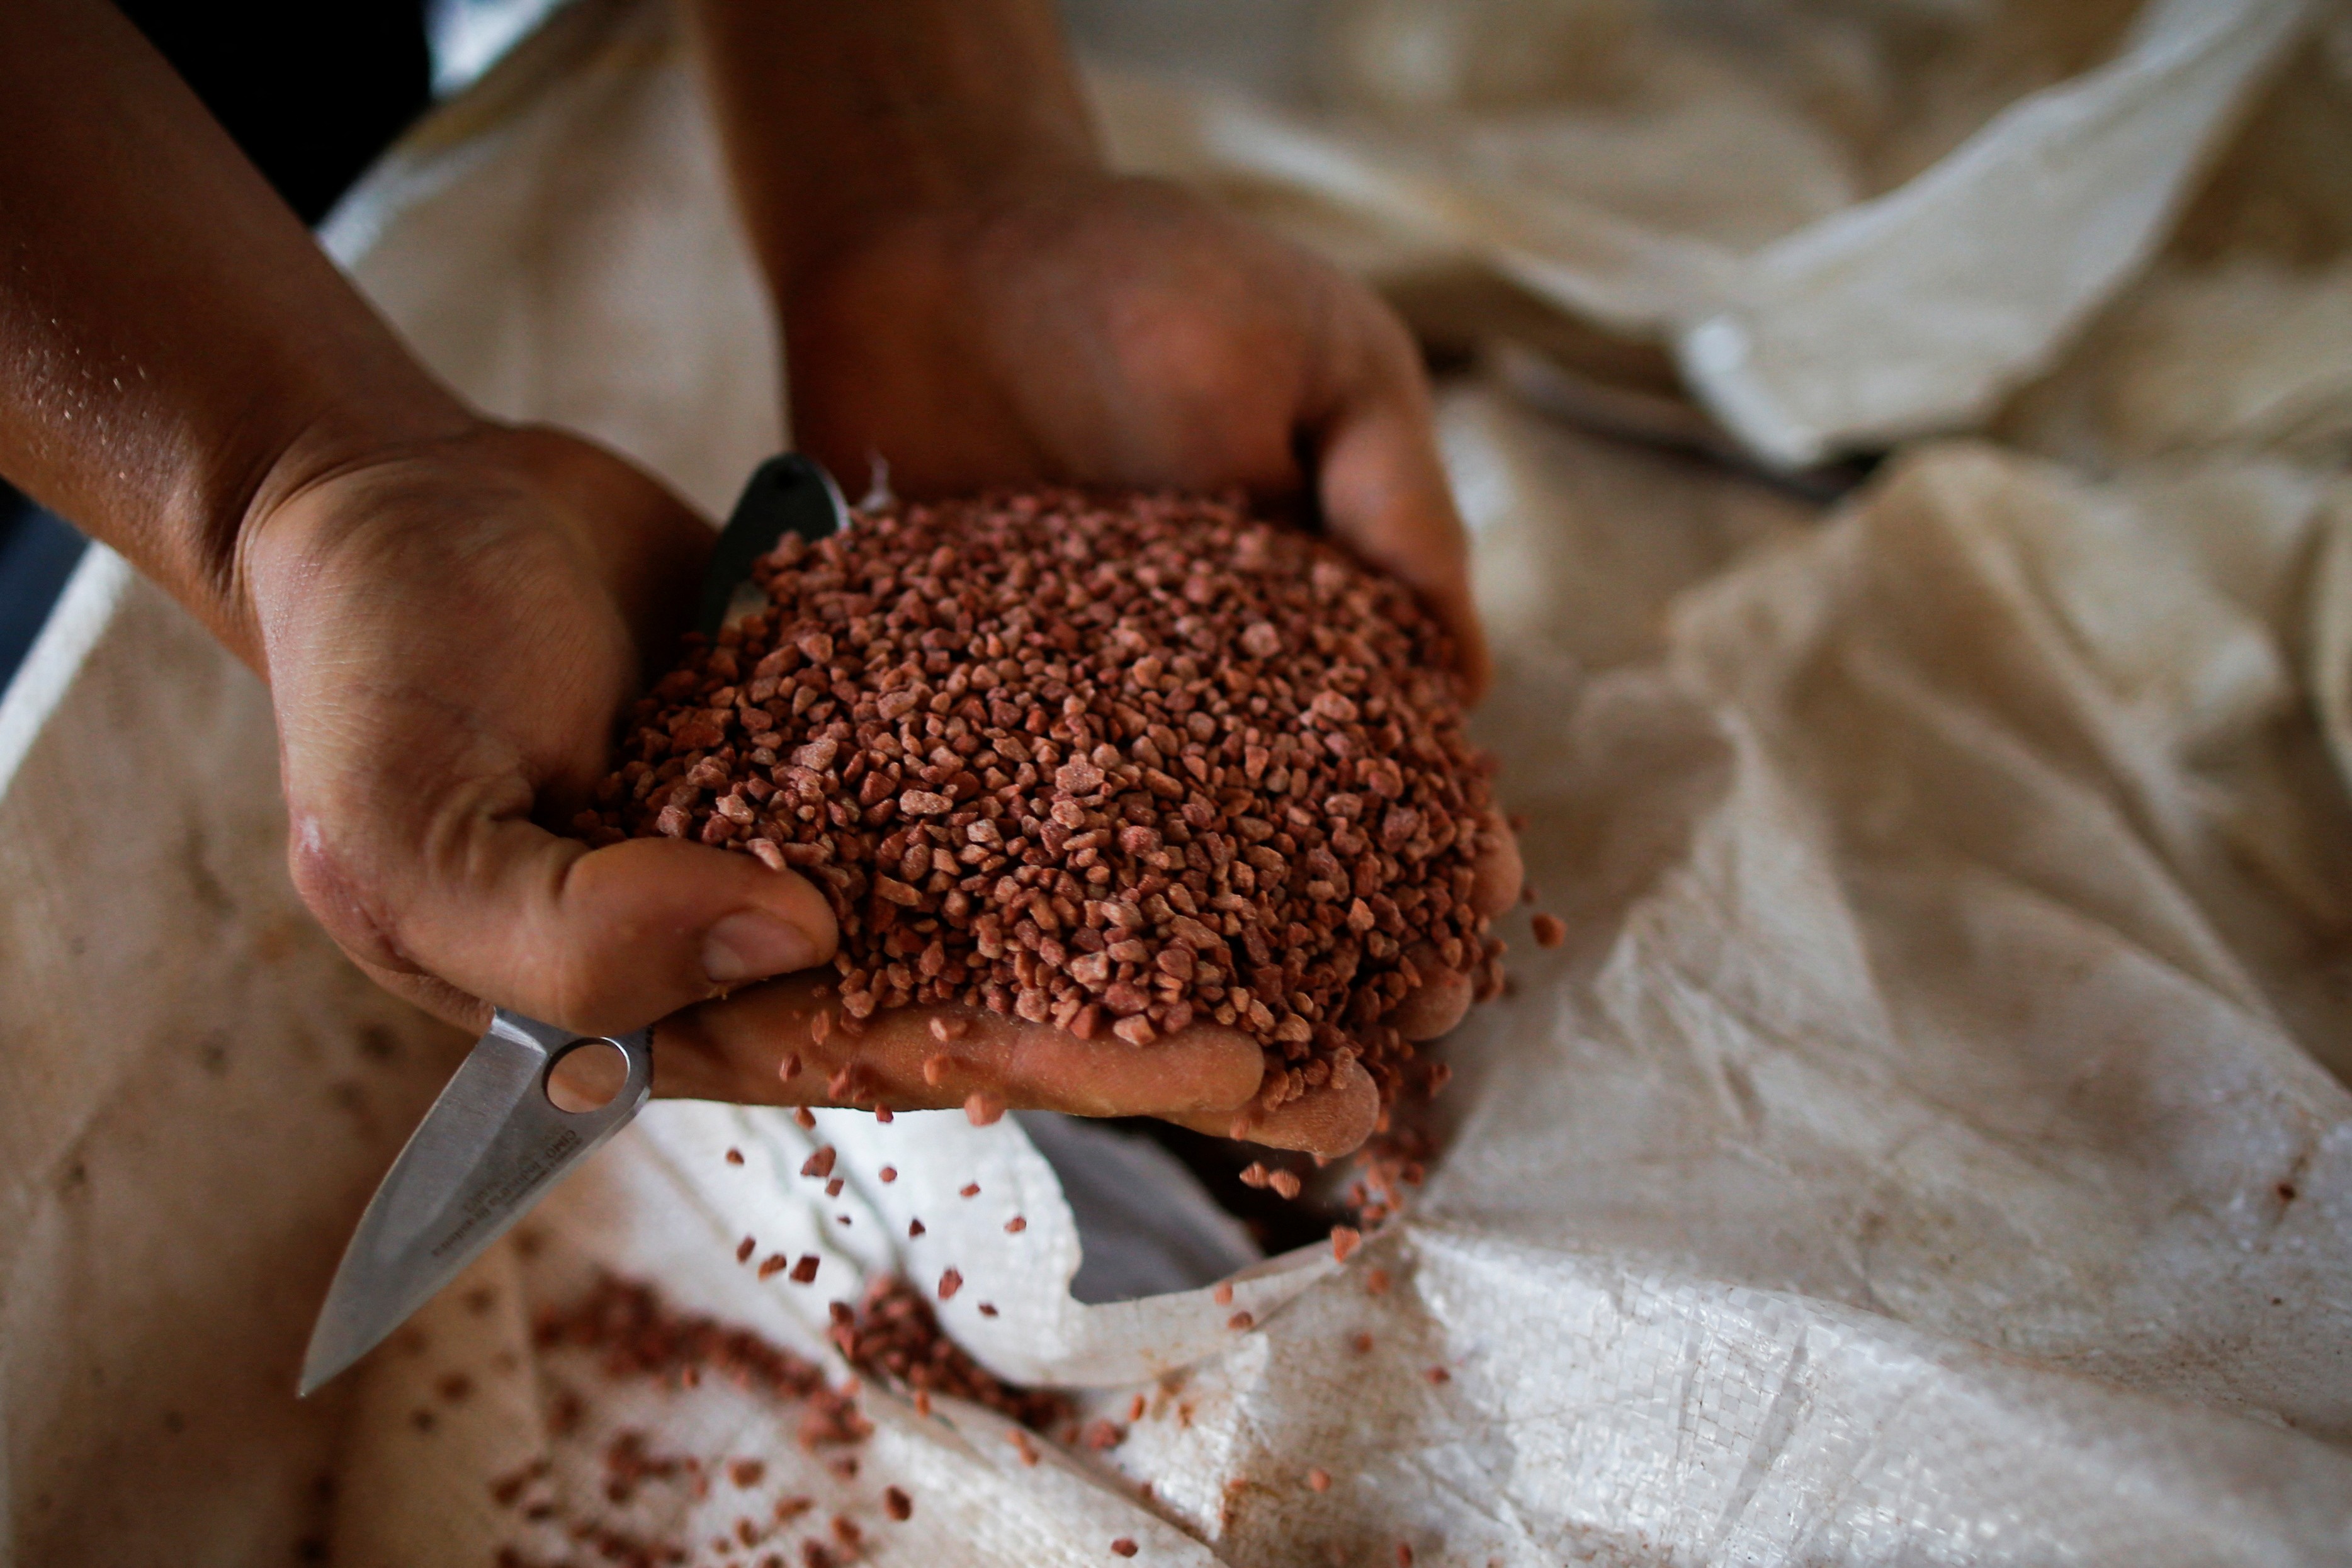 Agricultor mostra fertilizante antes de aplicação  (Foto: REUTERS/Adriano Machado)